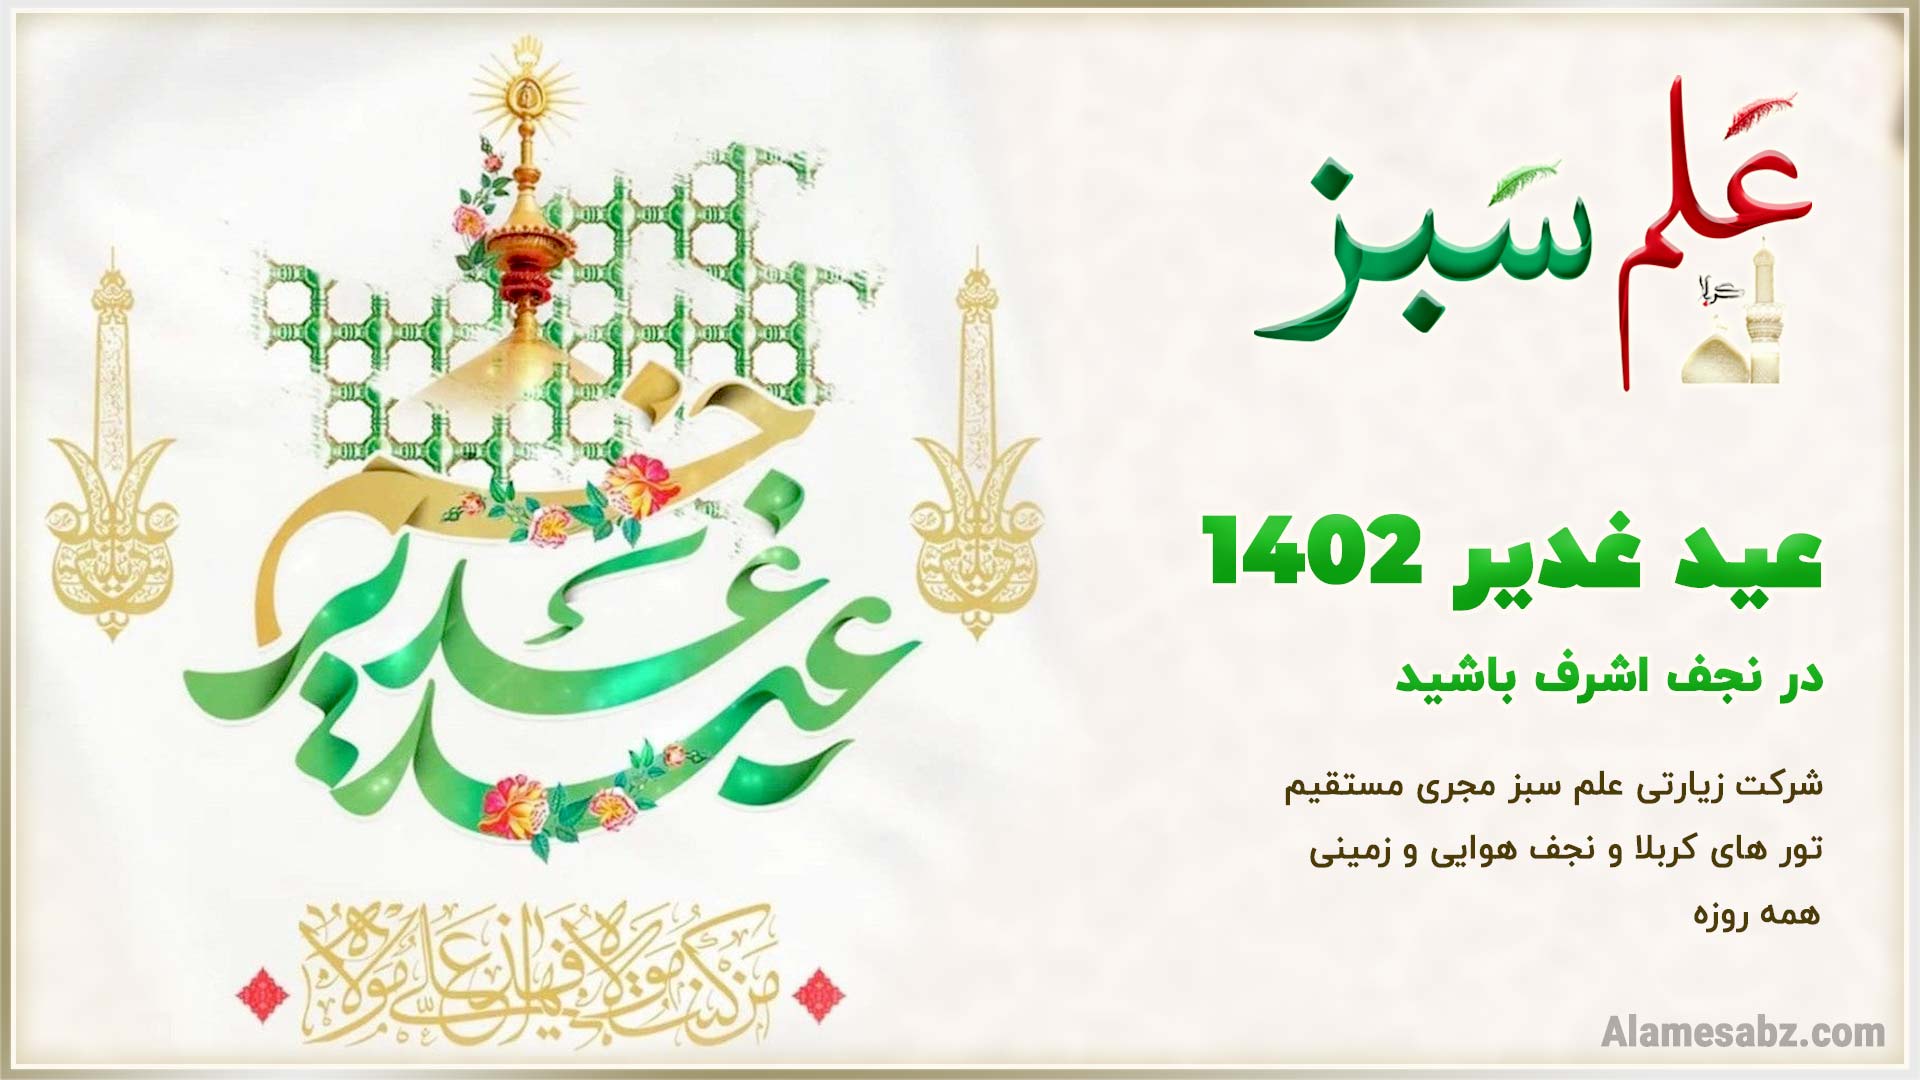 عید غدیر1402 در نجف اشرف باشید